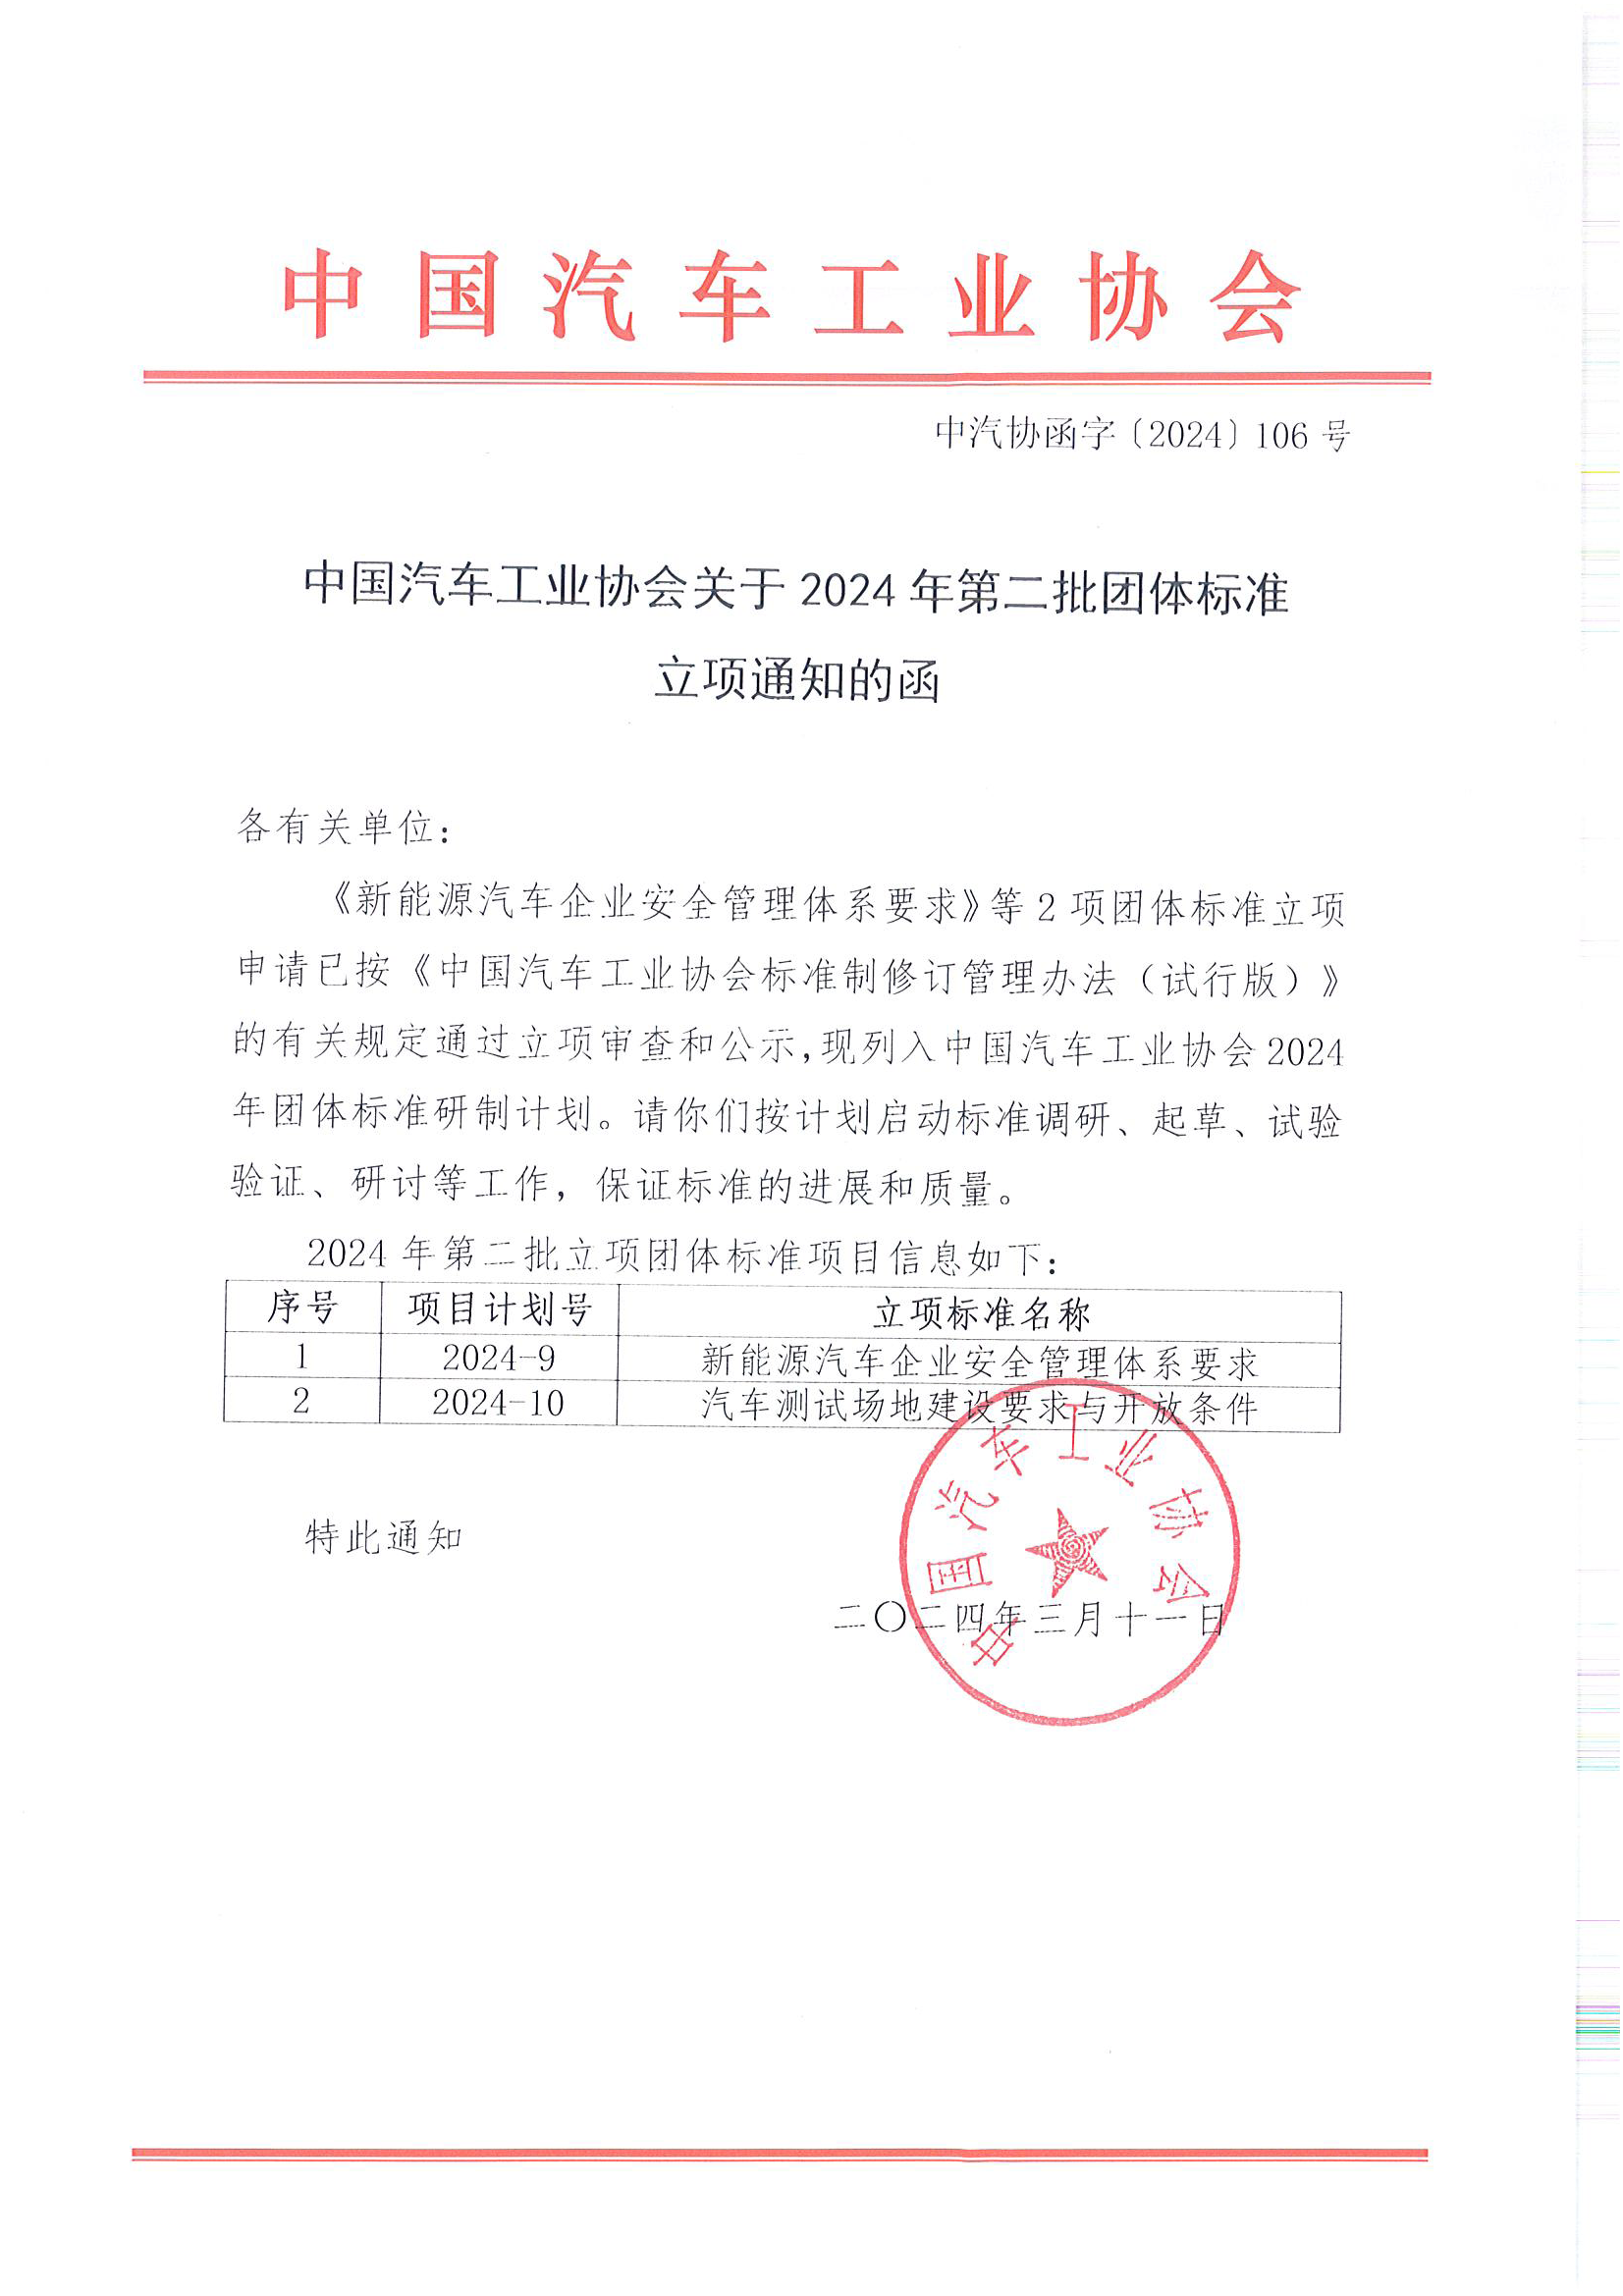 中汽协函字〔2024〕106号--中国汽车工业协会关于2024年第二批团体标准立项通知的函.png